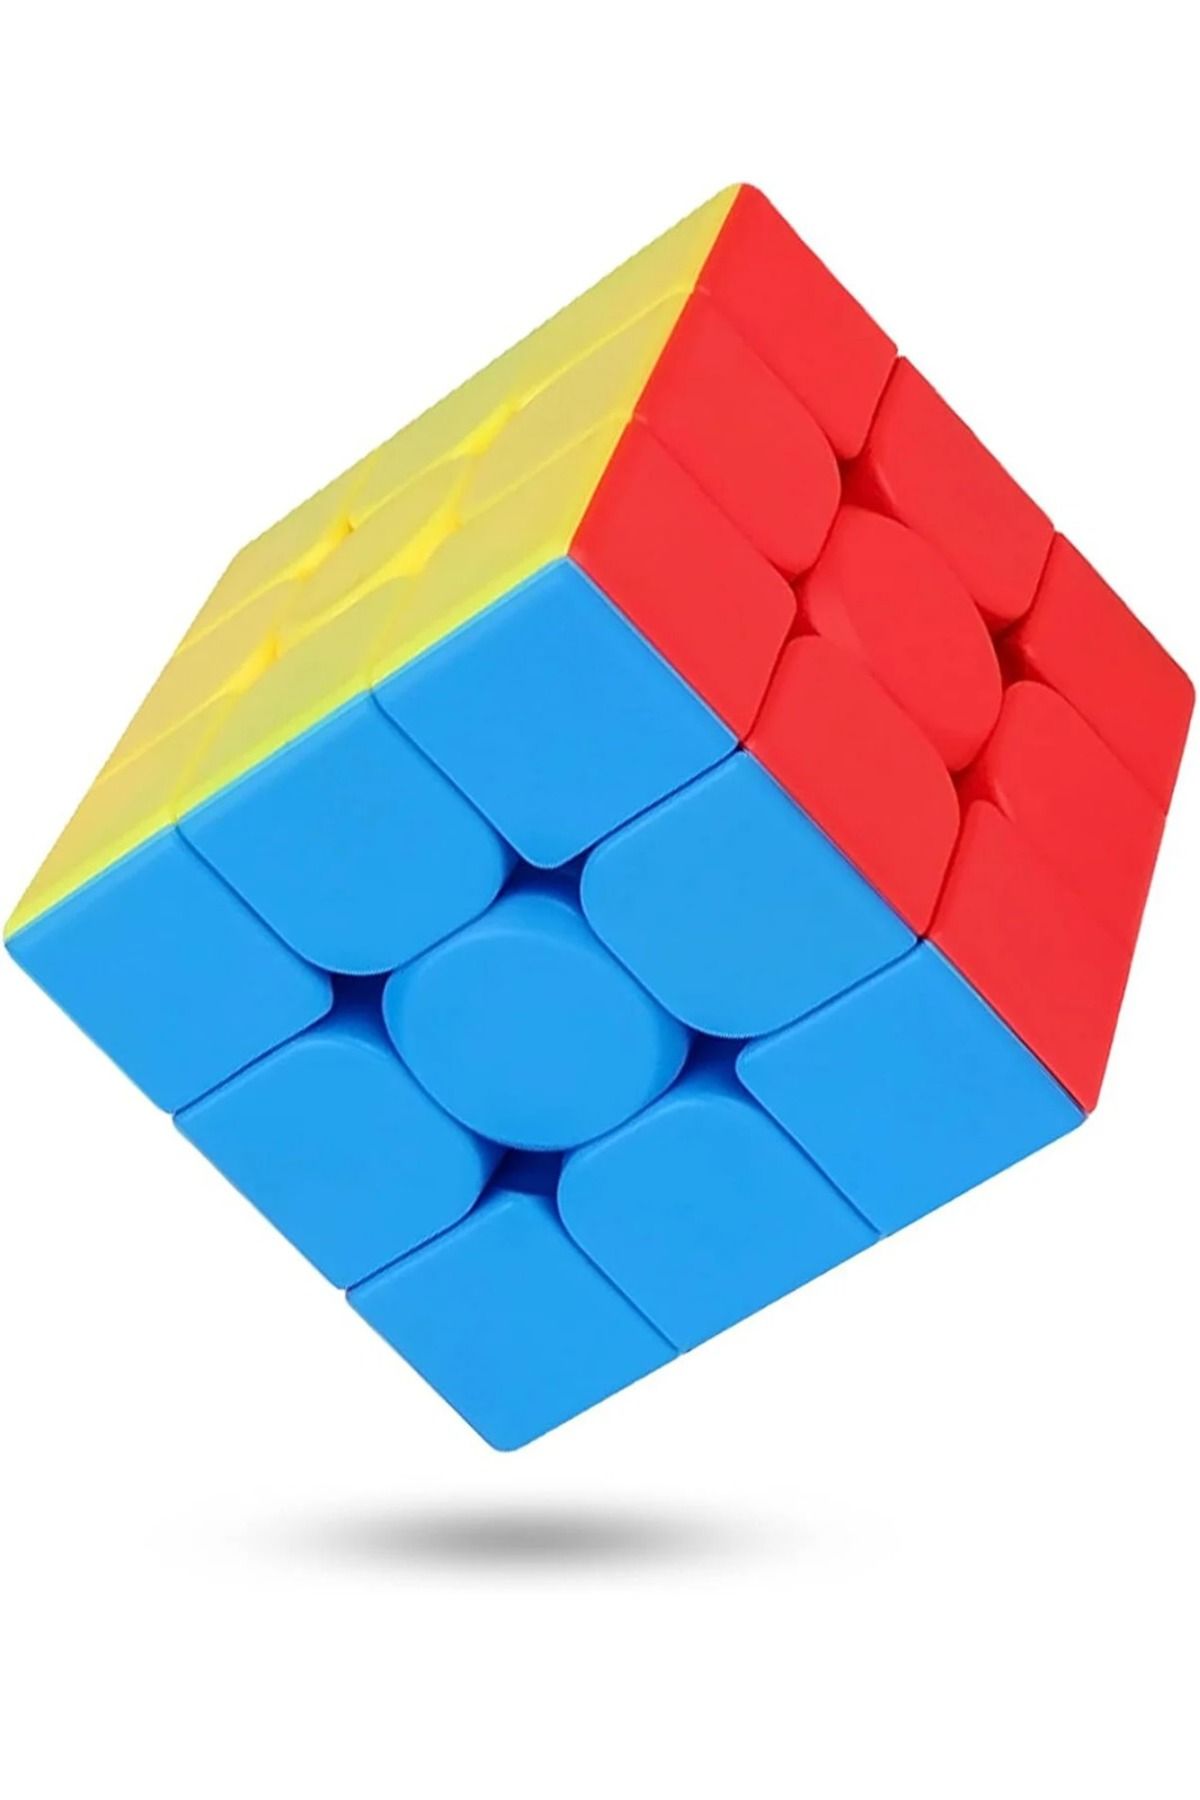 Kiwi Speed Cupe Rubik Küp Zeka Küpü 3x3 Canlı Renkler Hız Küpü,Fidget Oyuncak Seyahat Zeka Oyunu